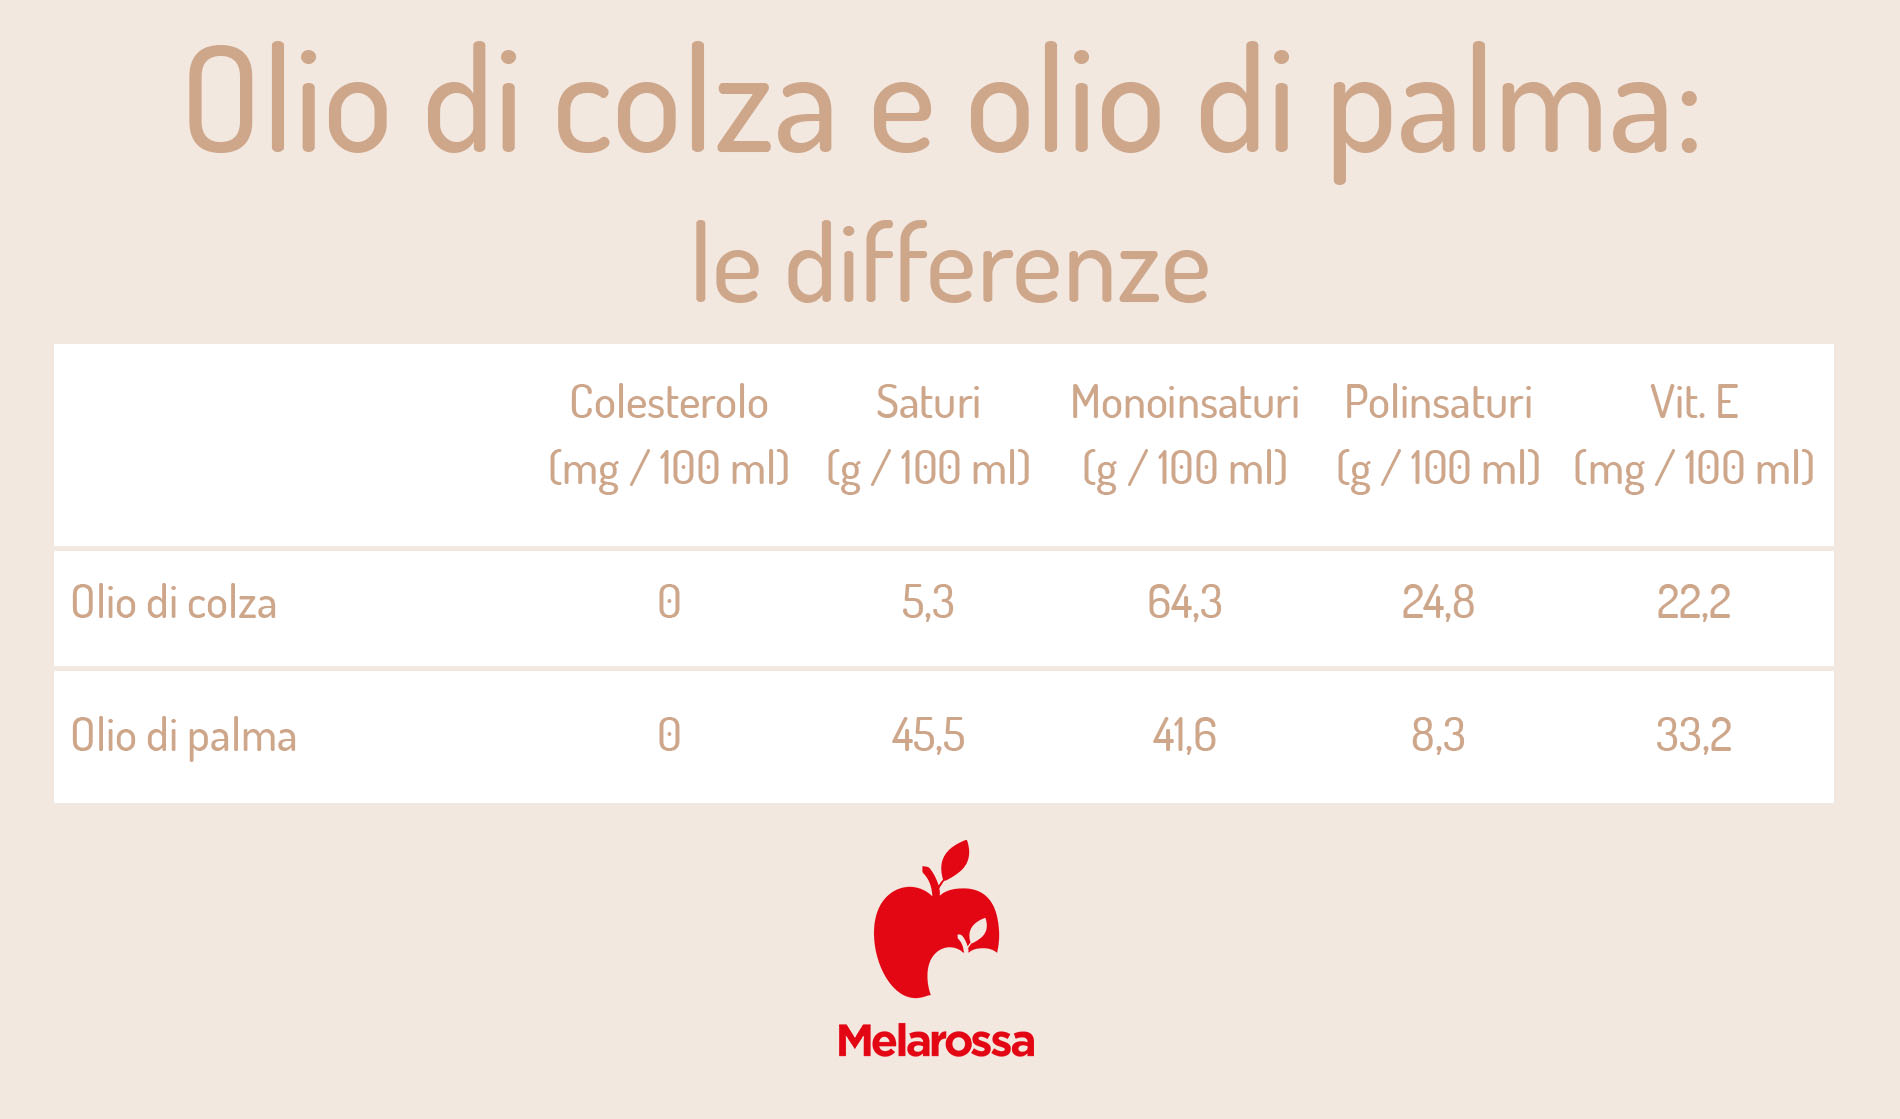 olio di colza e olio di palma: differenze